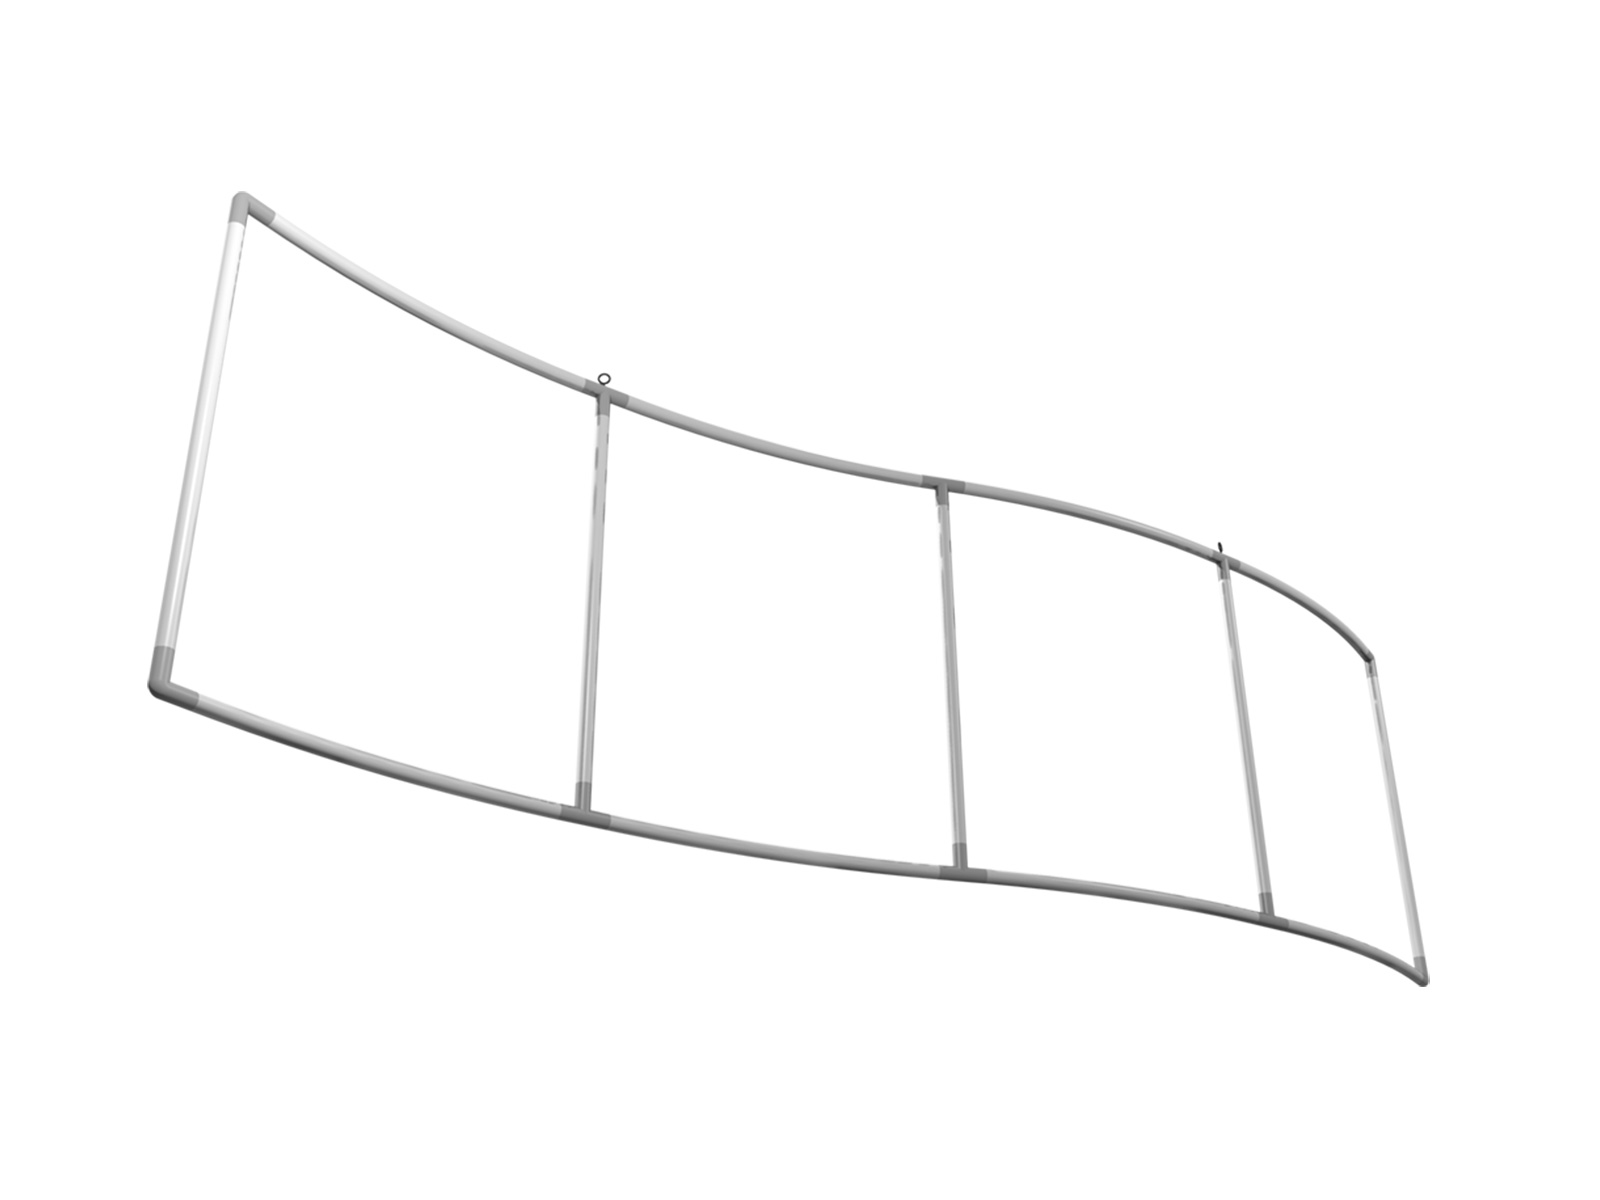 Suspended sign wave-shape 3 m